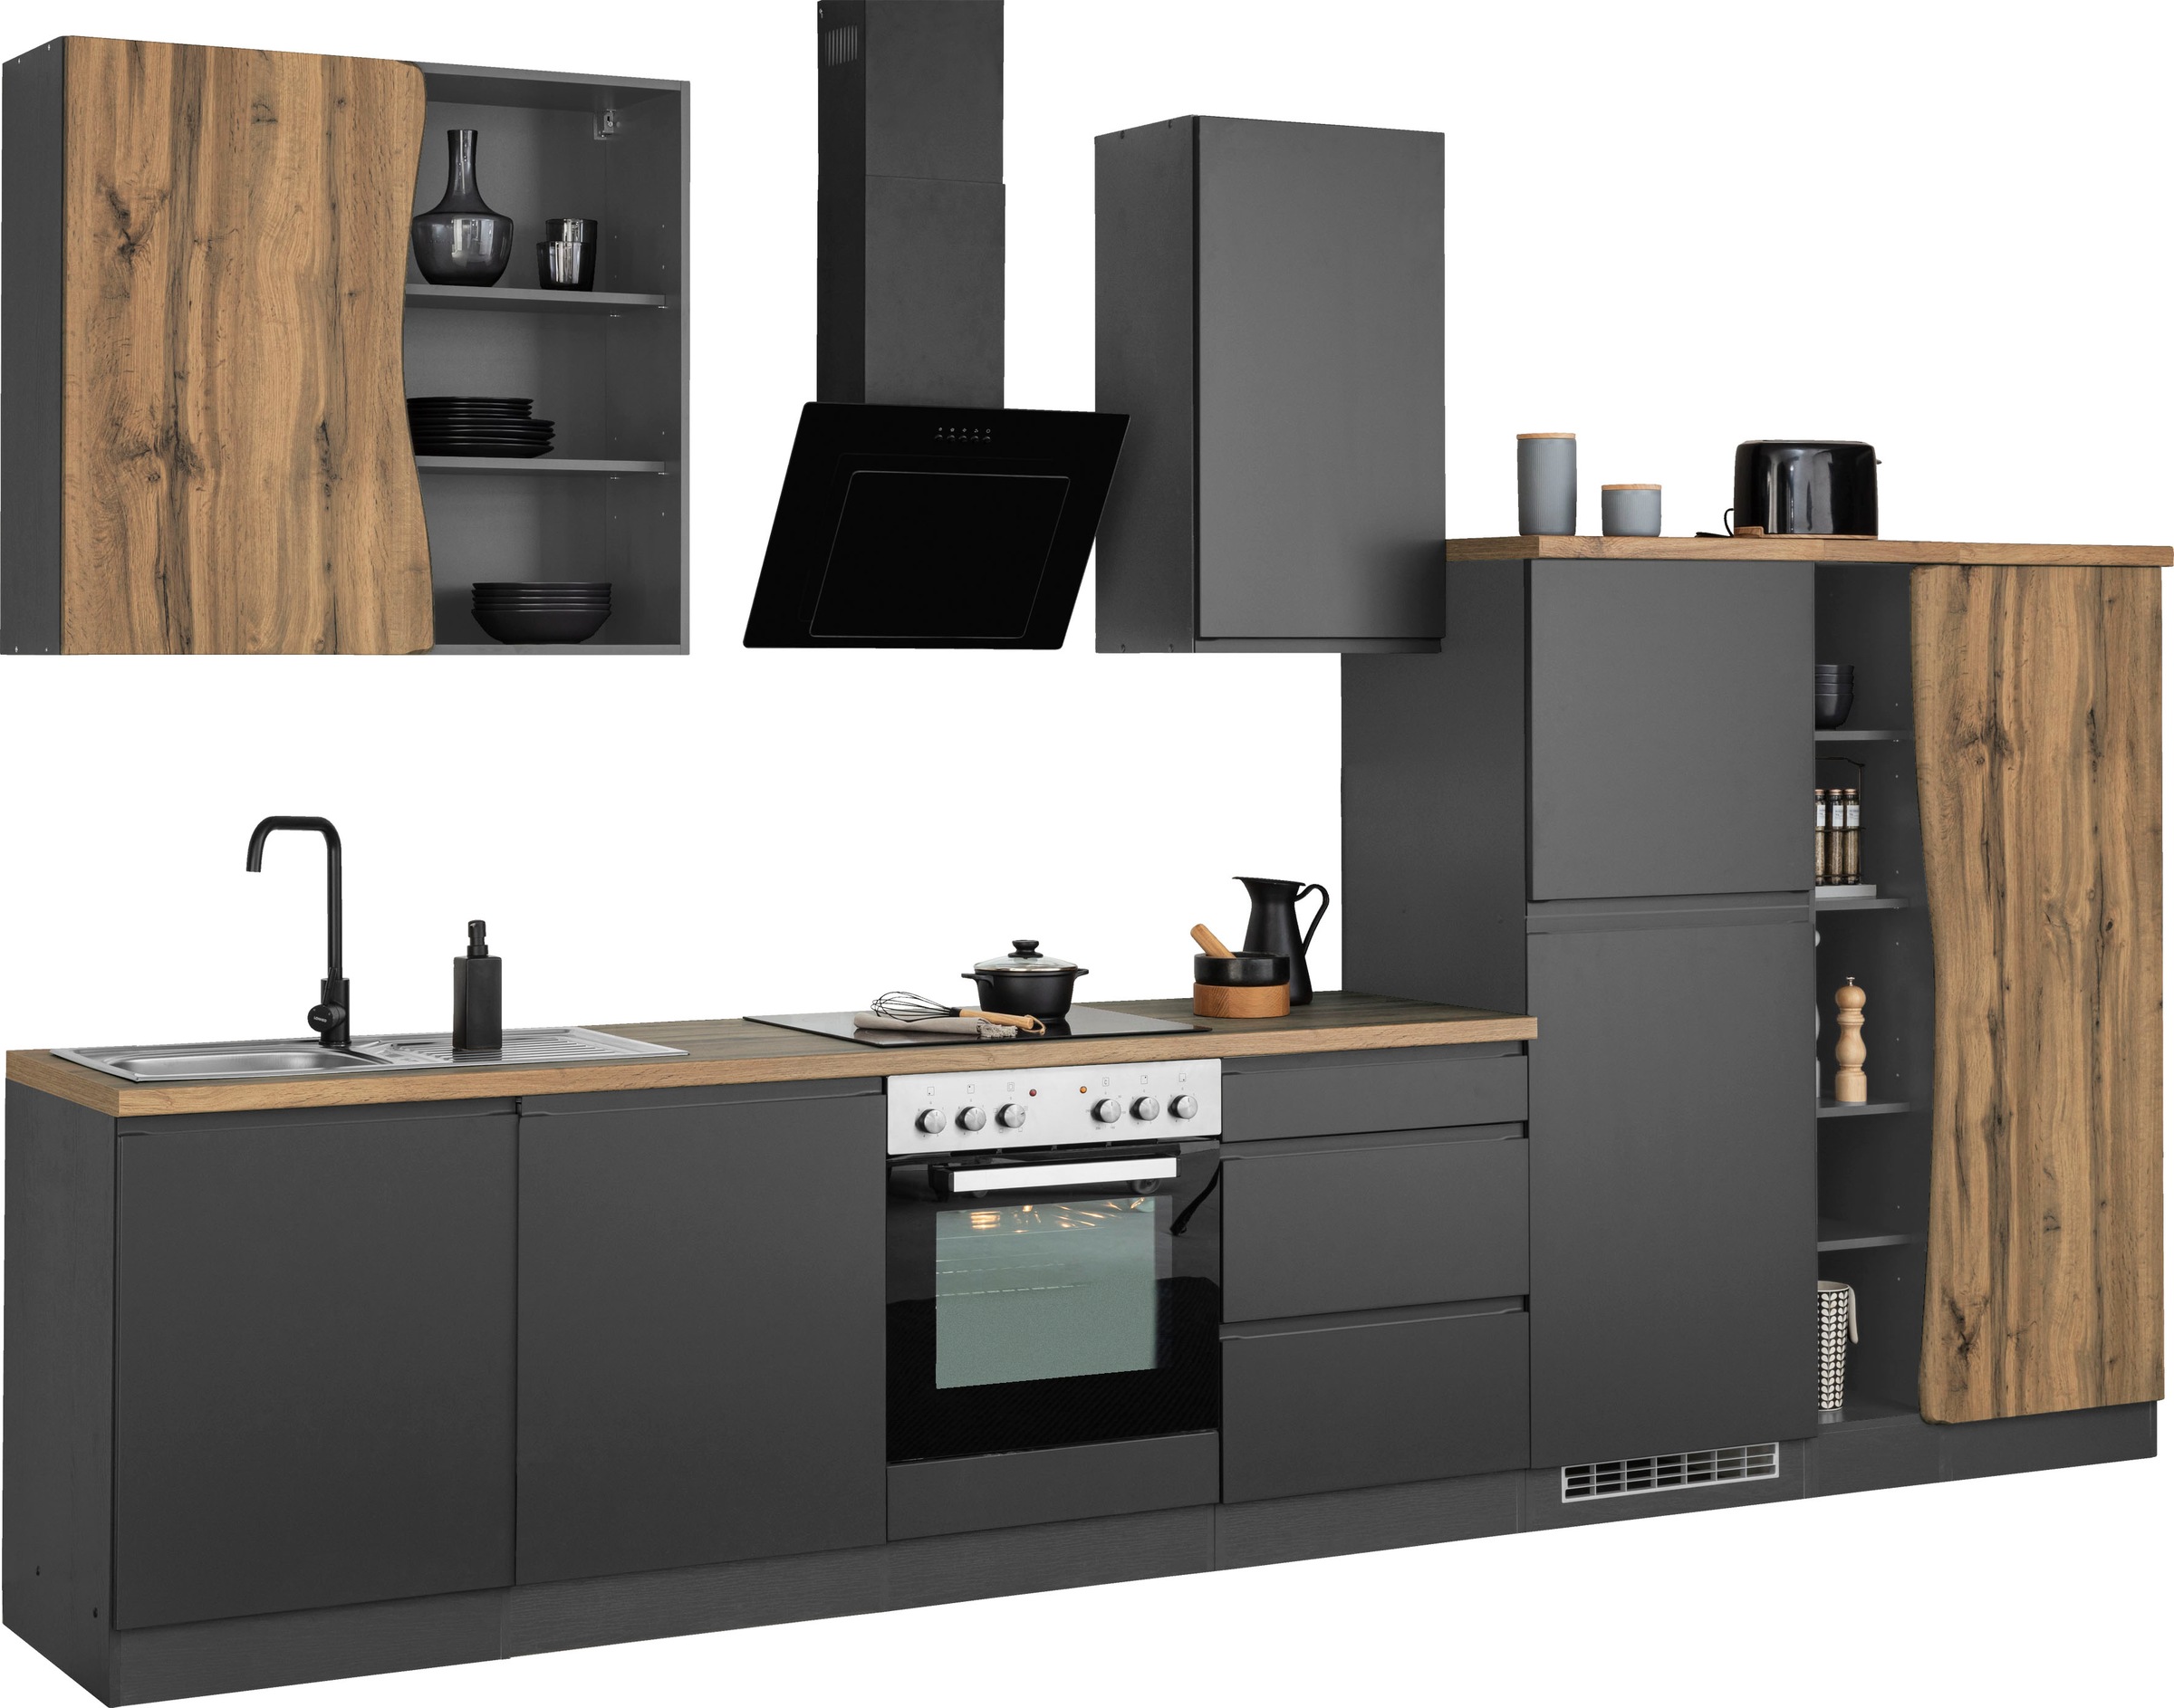 HELD MÖBEL Küche »Bruneck«, 380cm breit, wahlweise mit oder ohne E-Geräte,  hochwertige MDF-Fronten kaufen bei OTTO | Hängeschränke